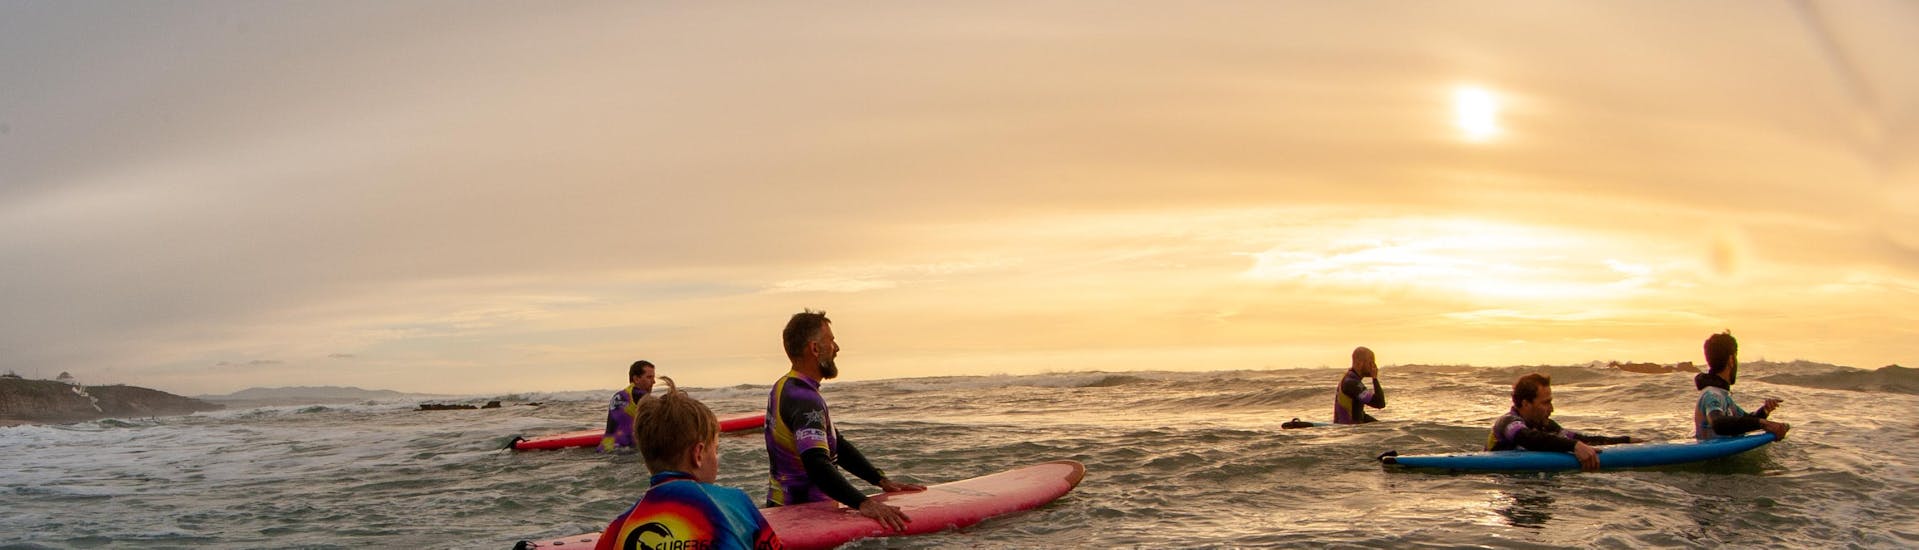 Il sole tramonta durante le Lezioni di surf per surfisti intermedi ad Ericeira (dai 7 anni) con Surf365 Ericeira.